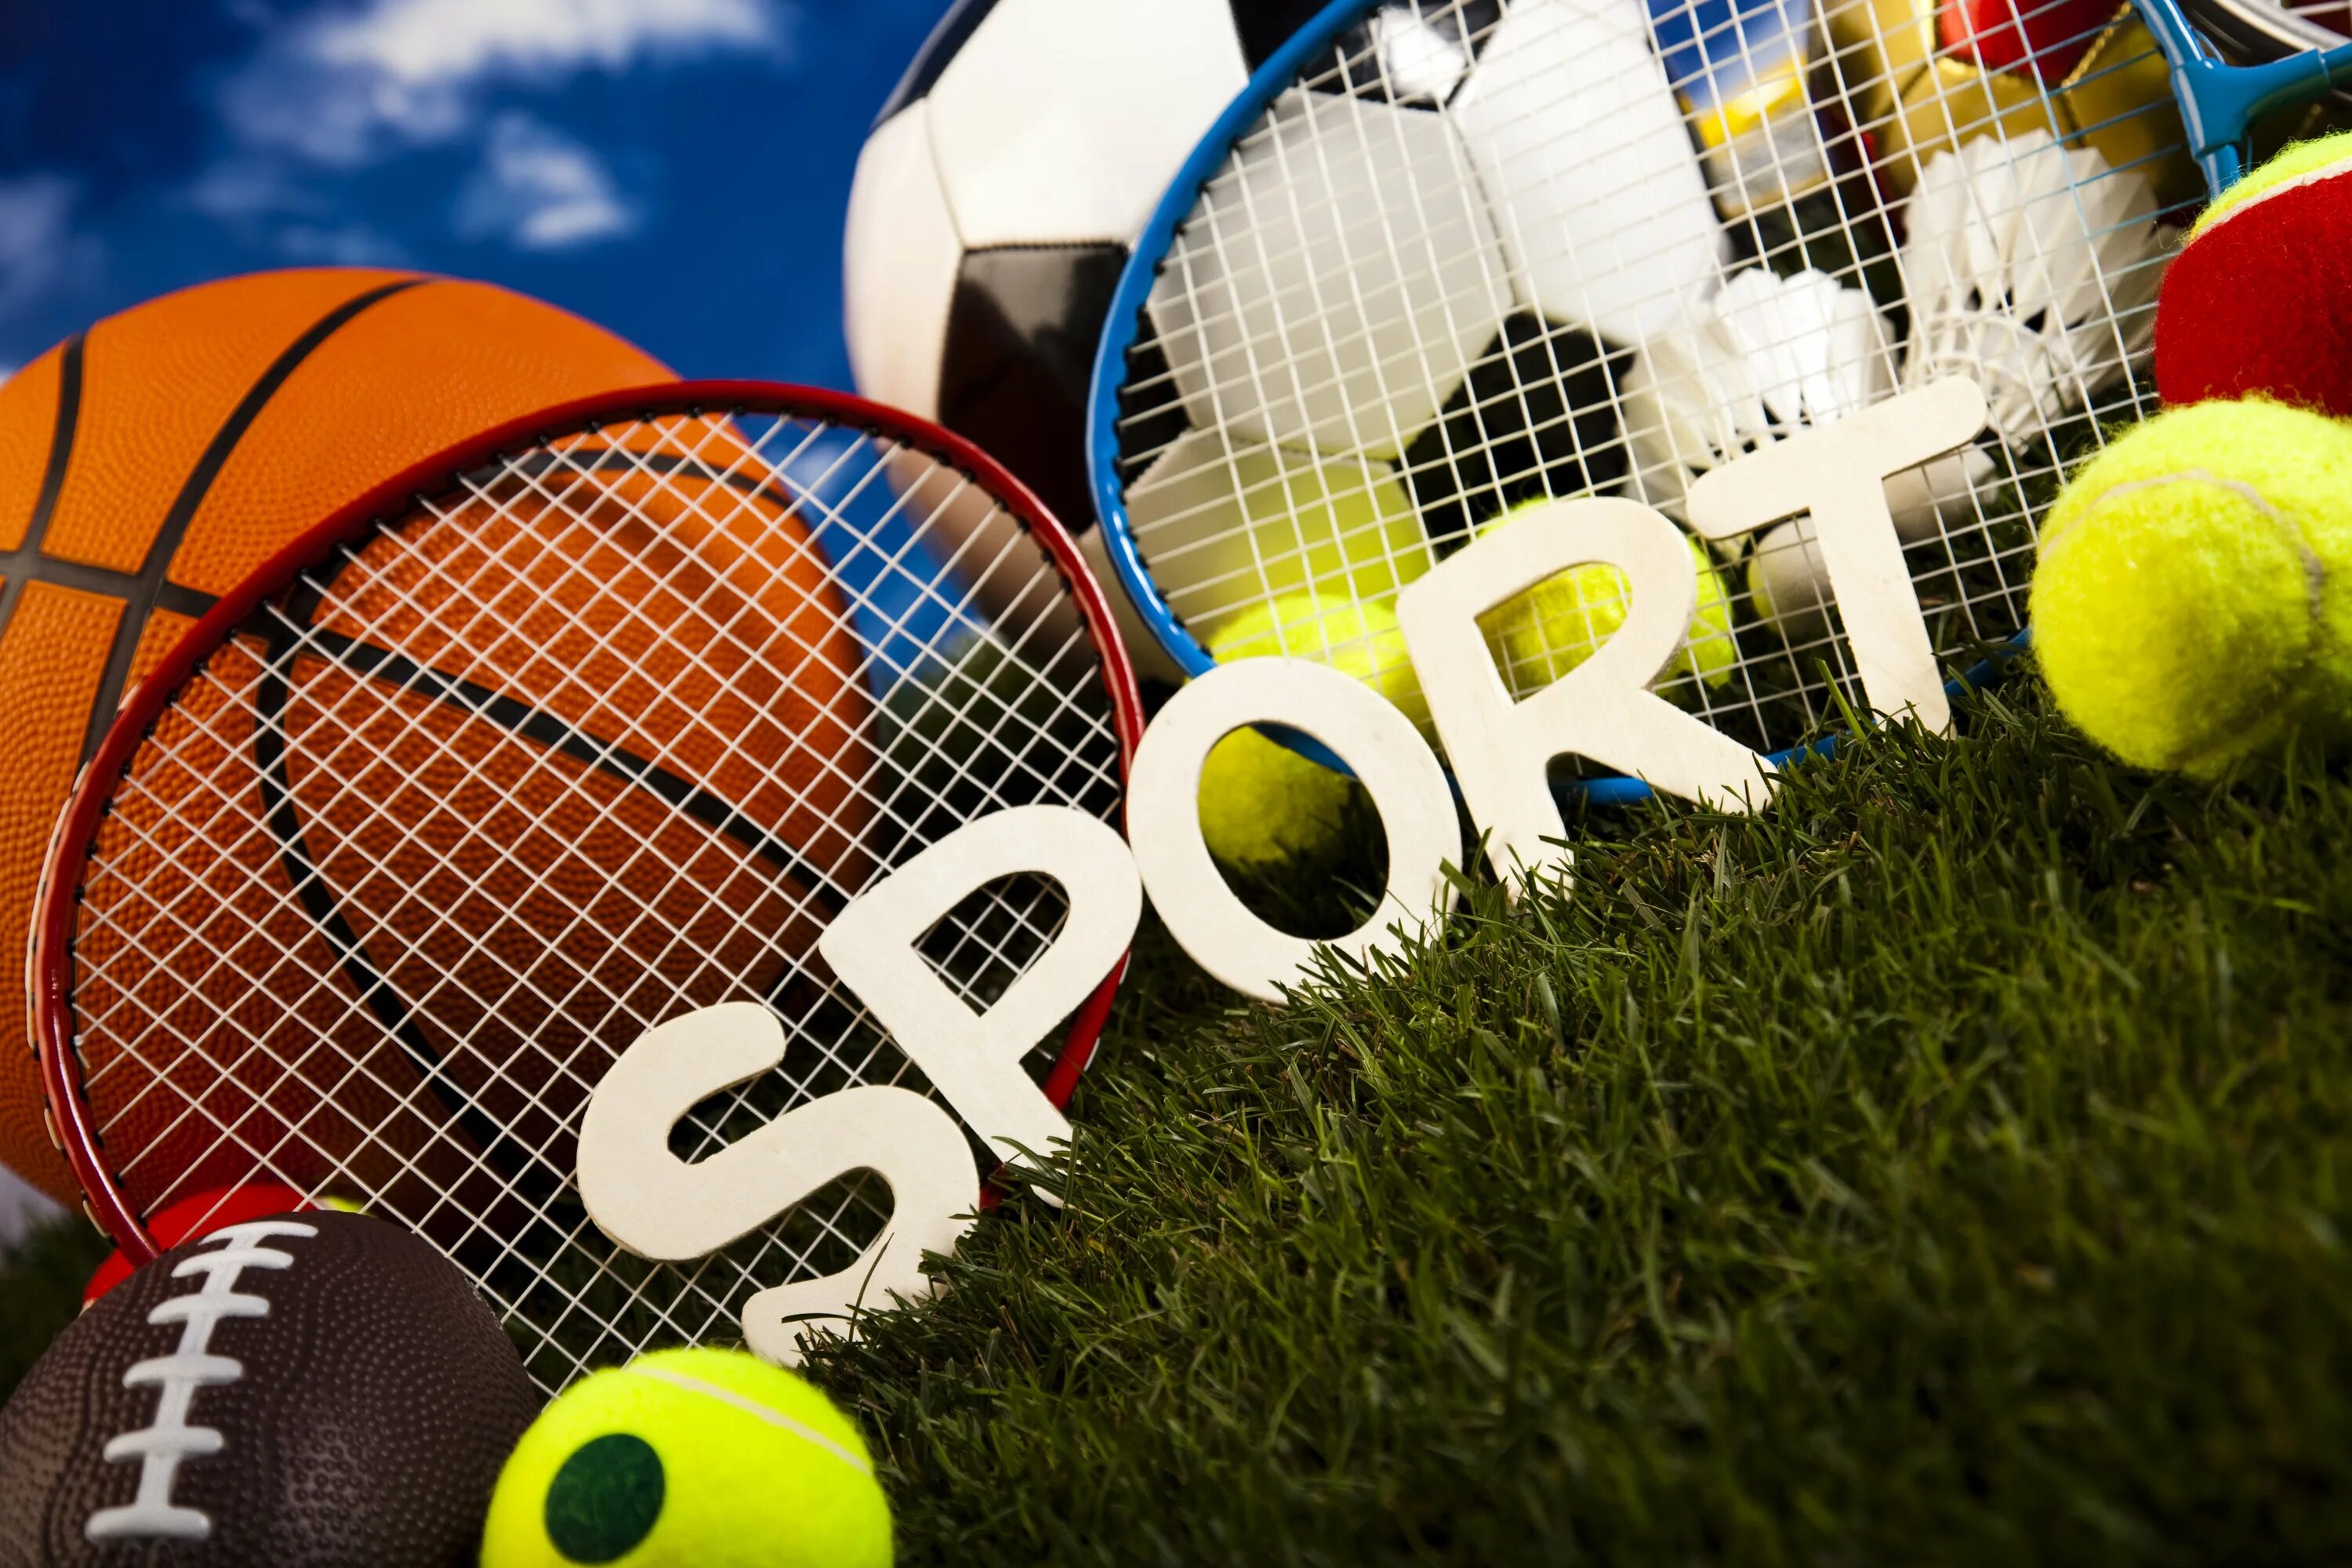 Спорт вокруг. Sport Top игрушка. Картинка для блога про спорт. Спортивный блог. Blogs sports ru